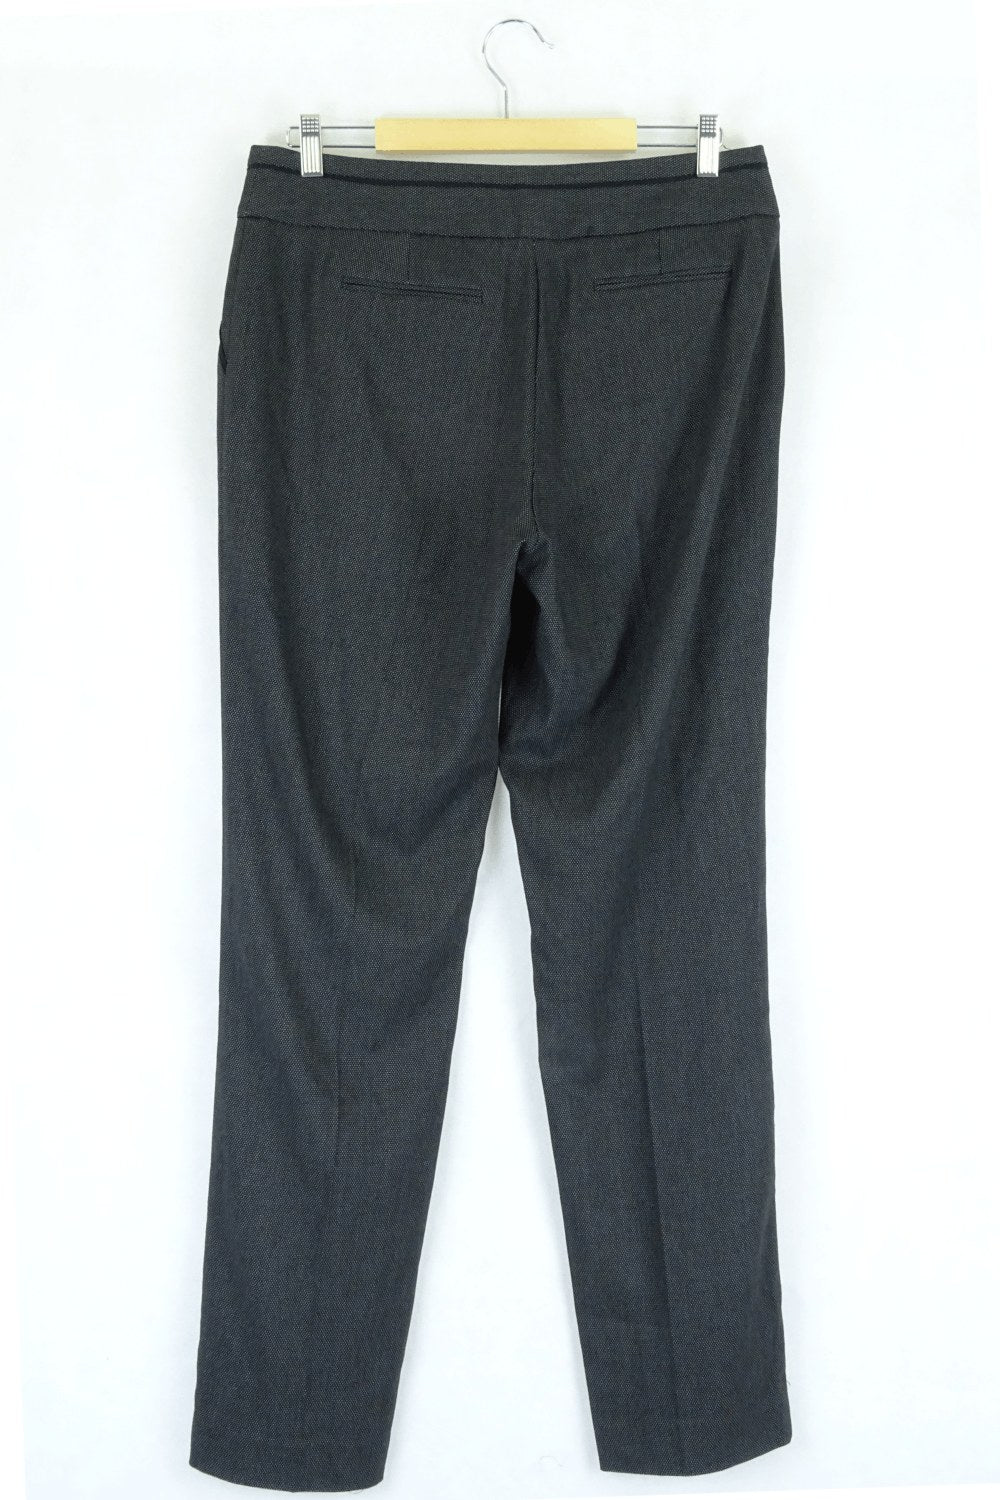 Men's Suit Pants Online in Australia | Connor